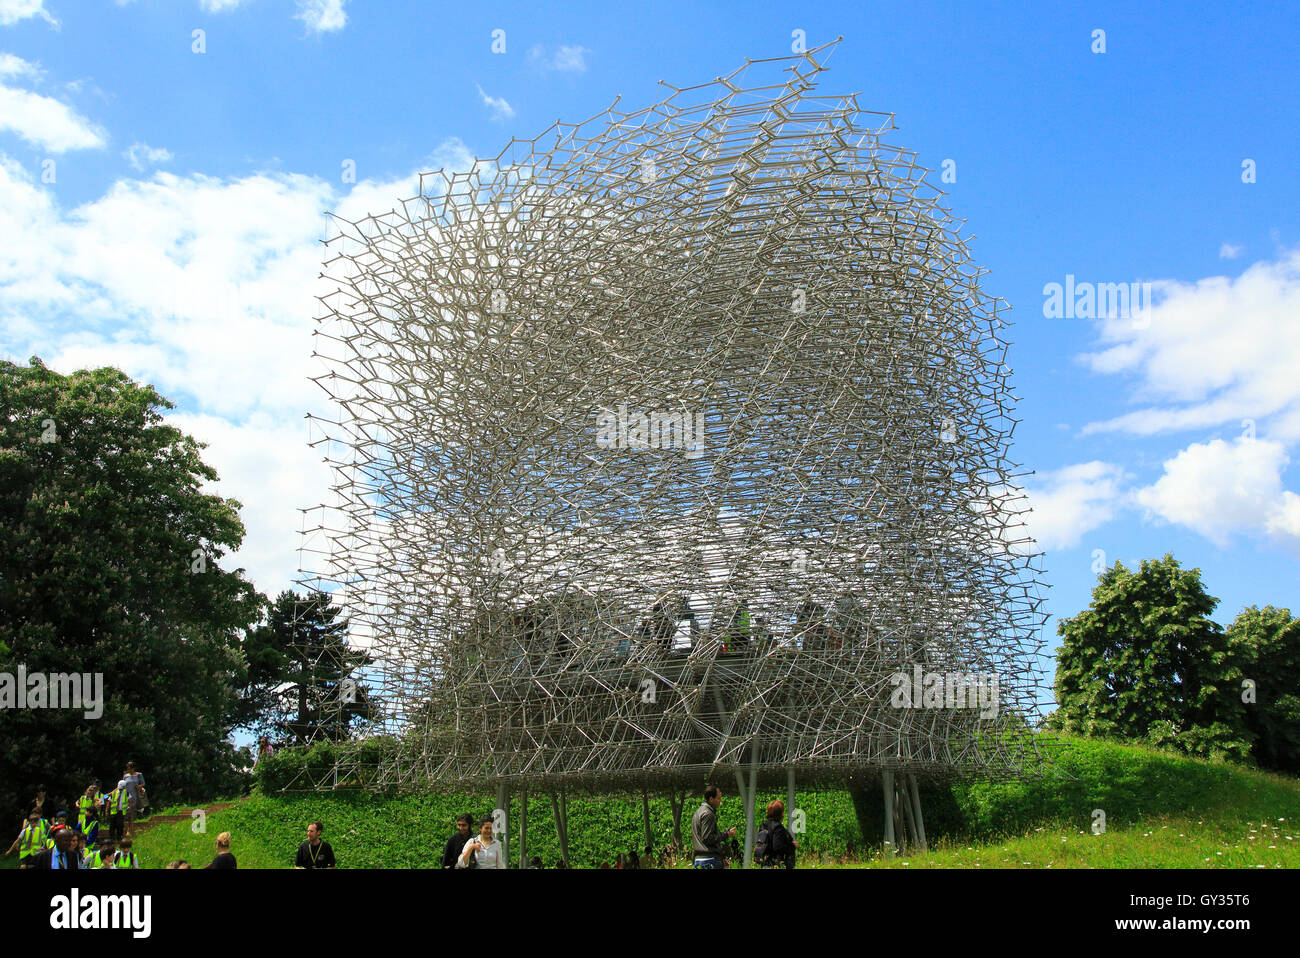 La ruche d'art sculpture à Royal Botanic Gardens, Kew, Londres, Angleterre, Royaume-Uni conçu par Wolfgang Buttress Banque D'Images